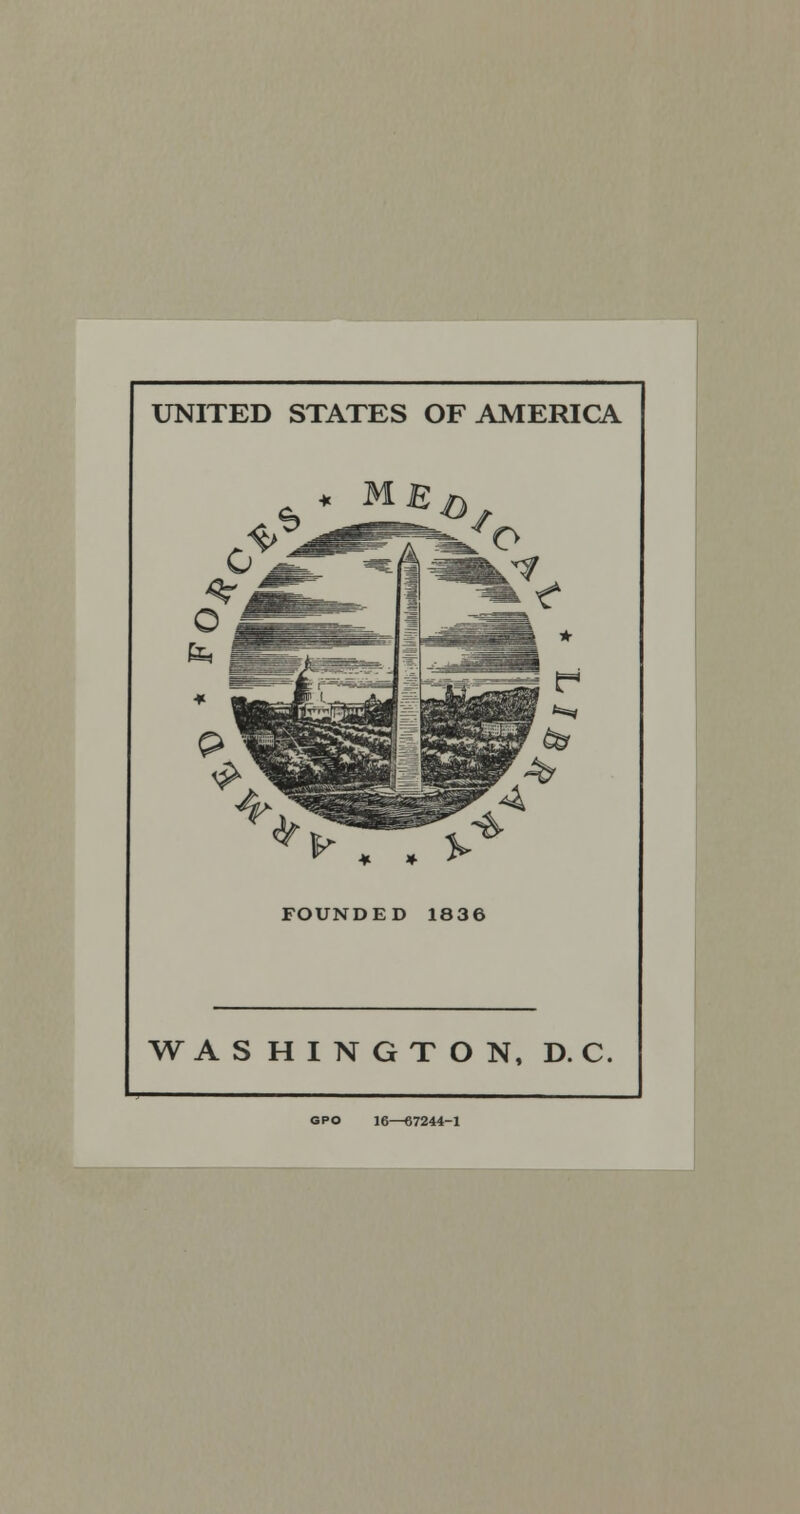 UNITED STATES OF AMERICA I^ * . FOUNDED 1836 WASHINGTON. D. C. GPO 16—67244-1